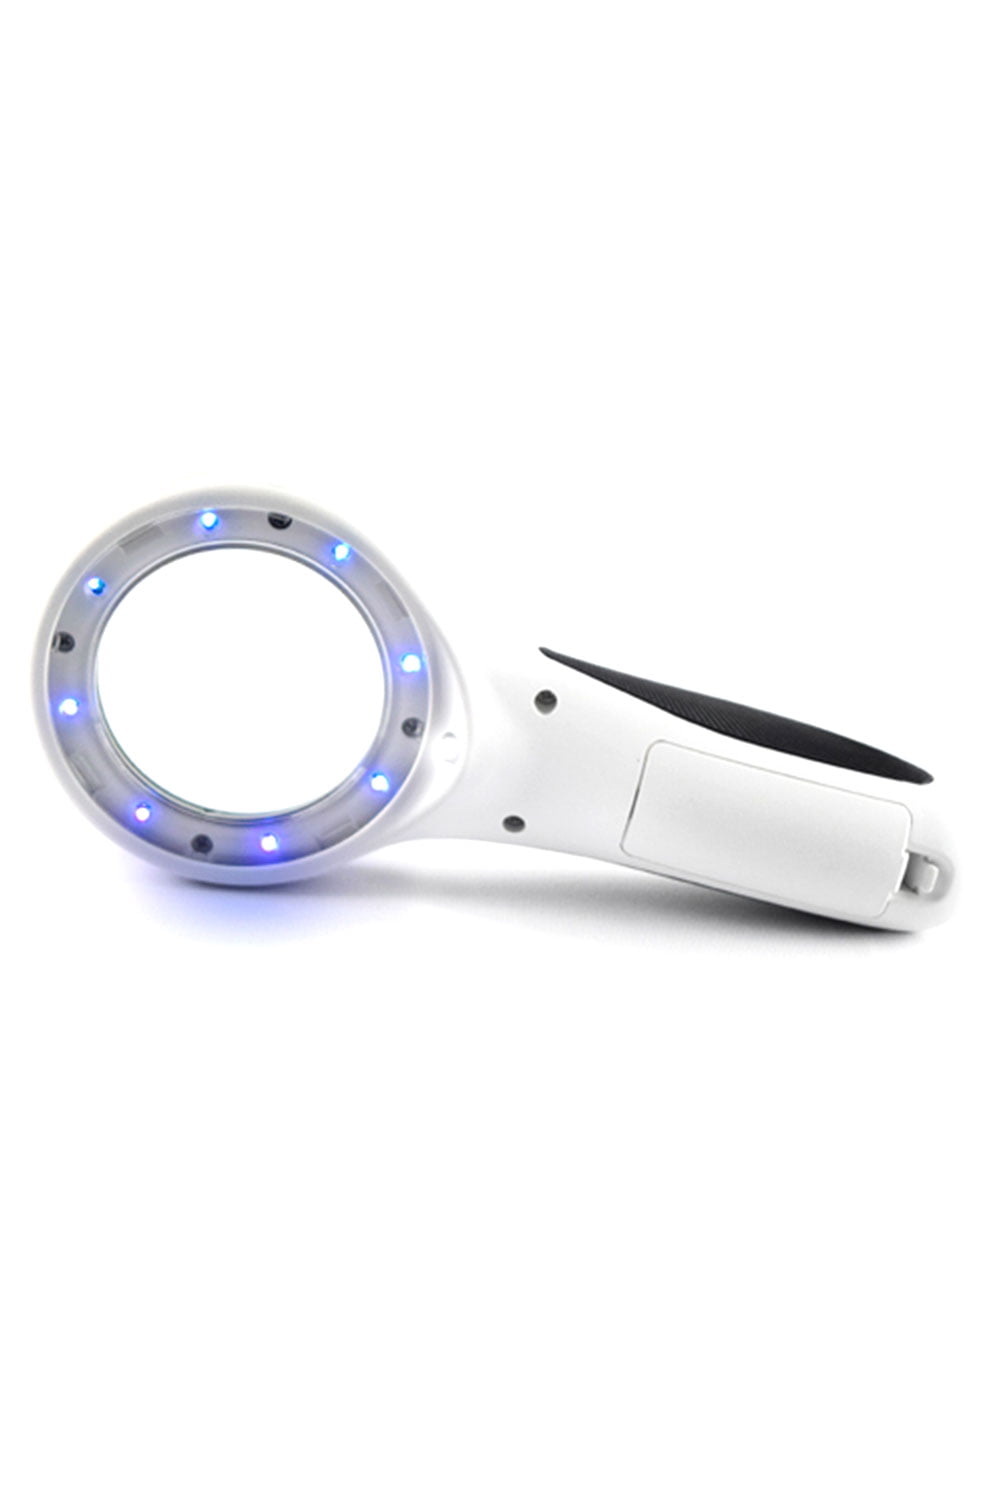 Mini Lupa de mão 60mm 8 LEDS UV e 1 Branco - Estek - Lupas de Mão e Wood - Estek | Site Oficial